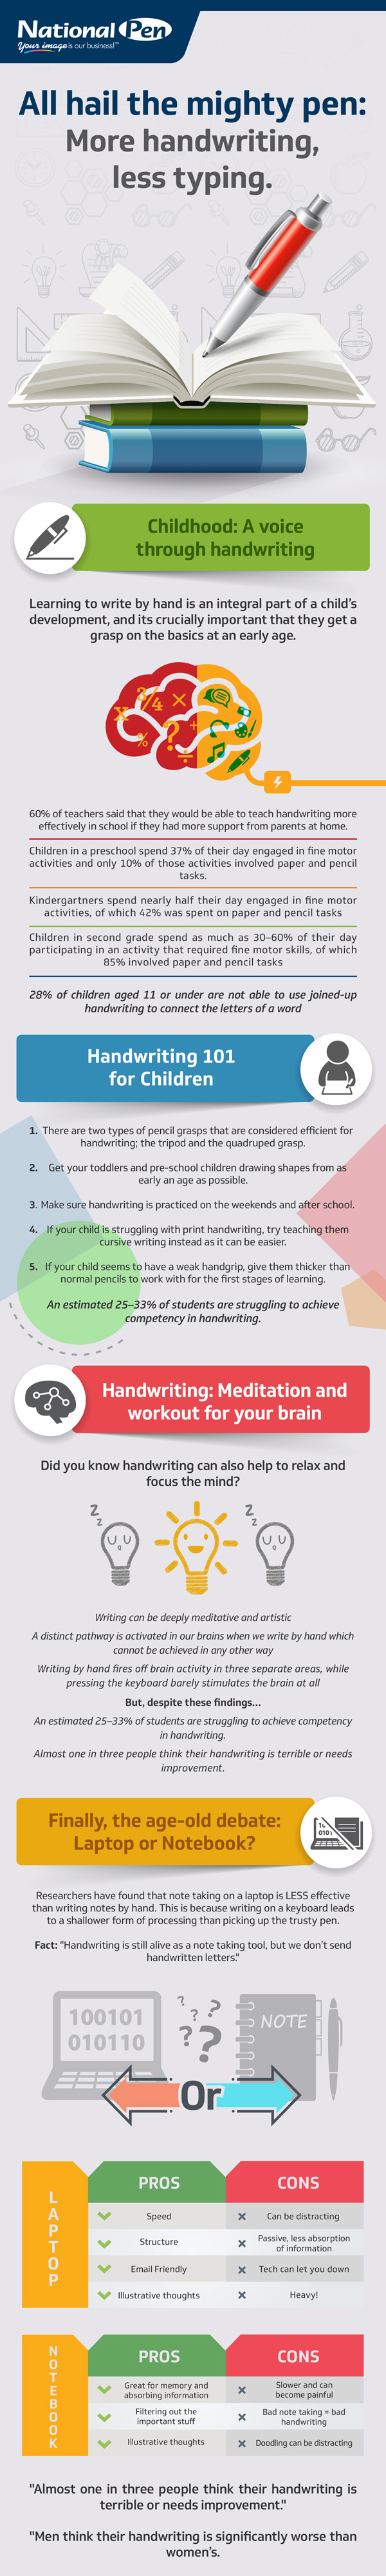 handwriting_infographic-1